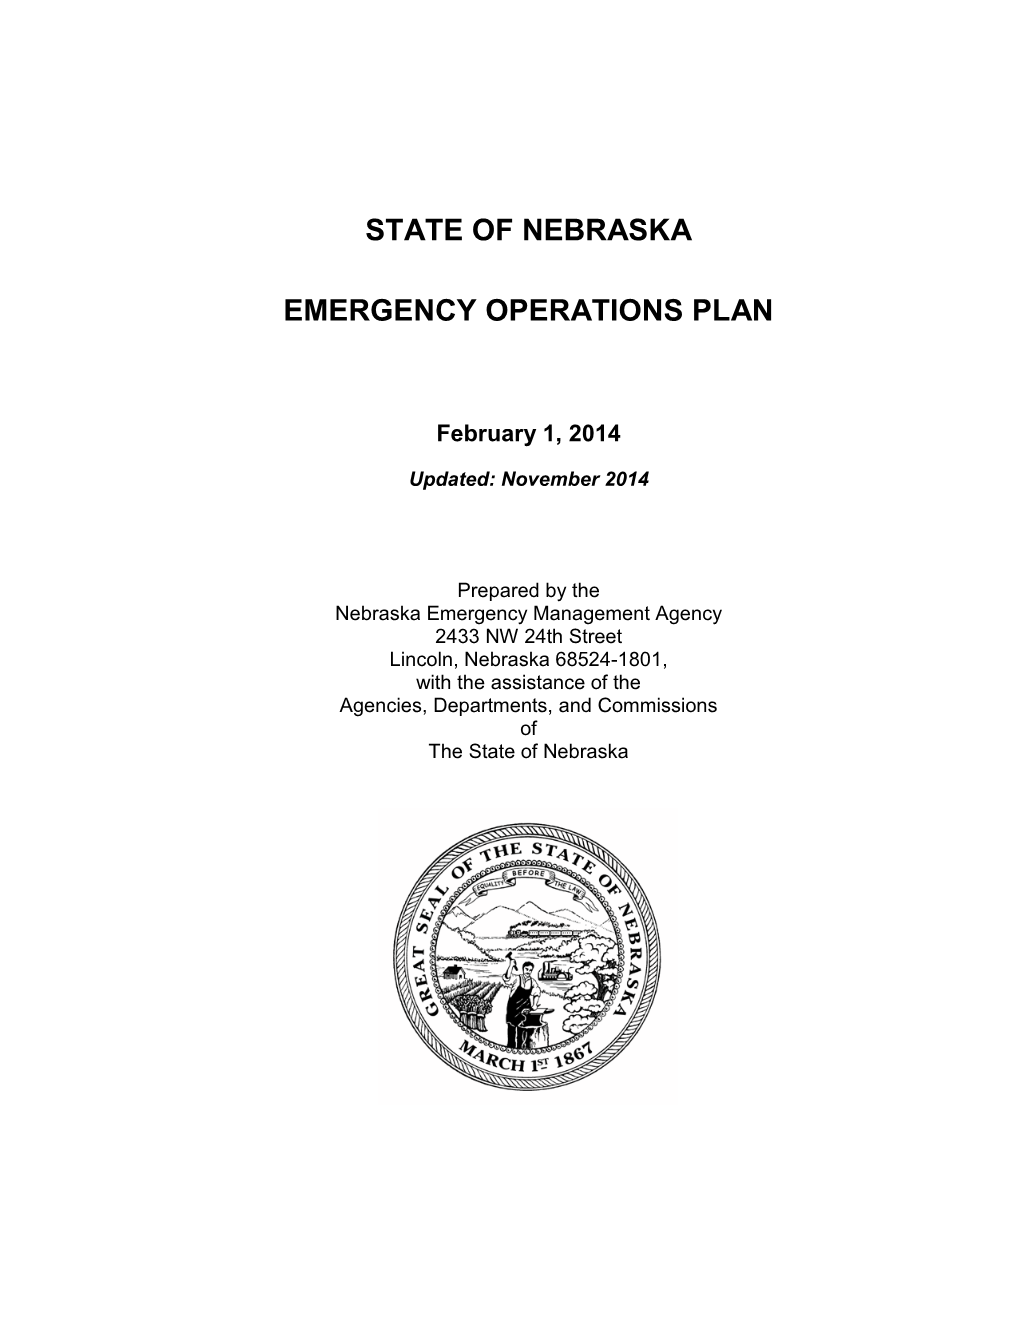 State of Nebraska Emergency Operations Plan